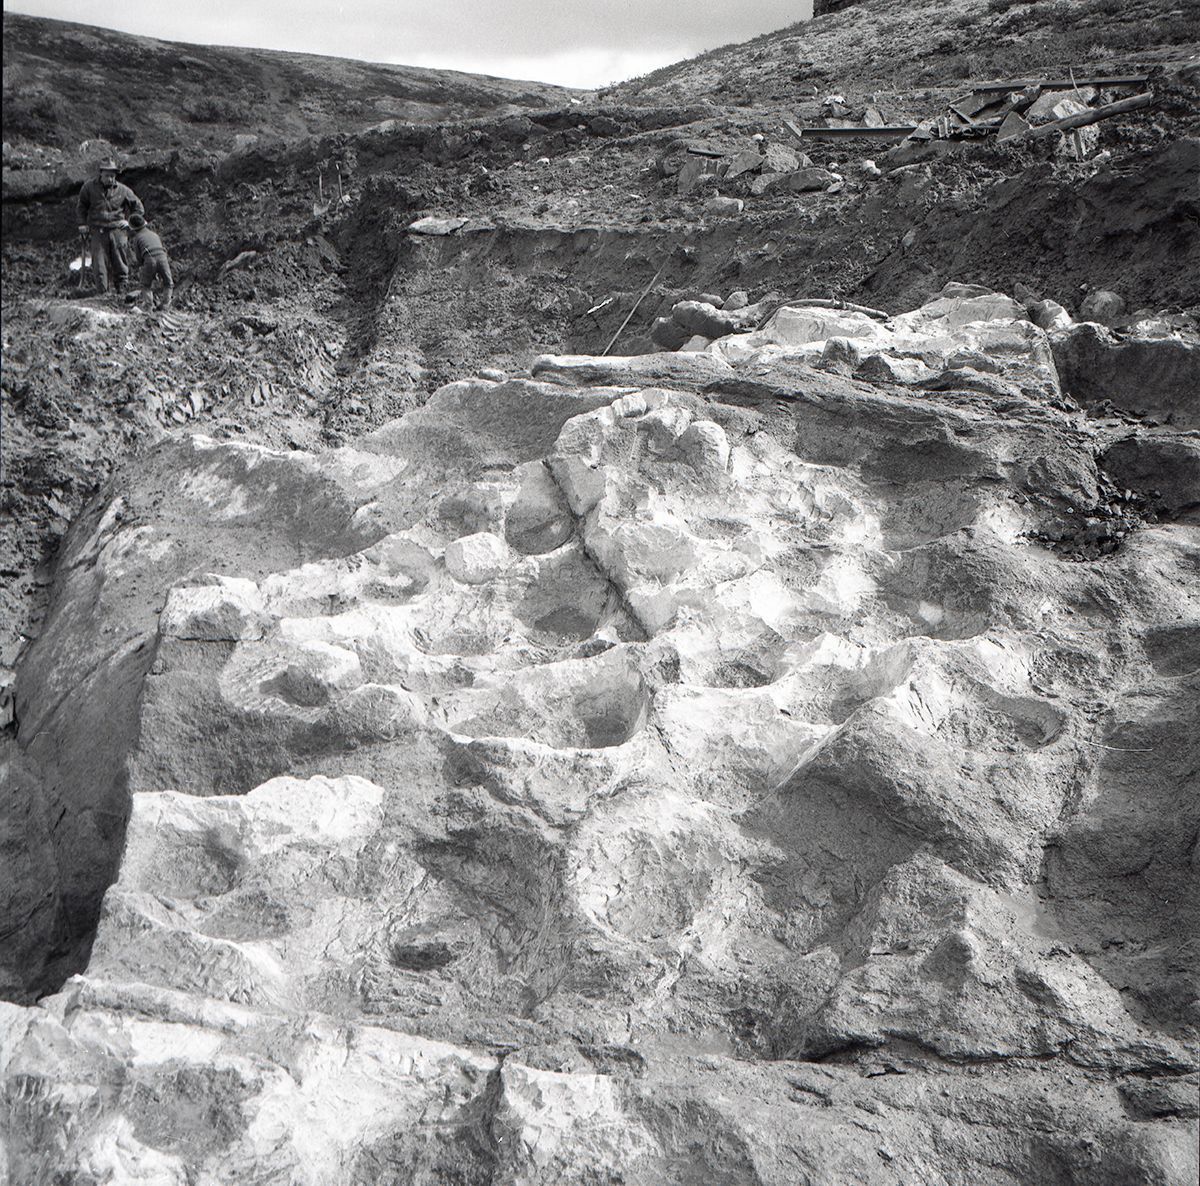 Scene fra klebersteinsbruddet. To mennesker i bakgrunn, svart-hvitt-foto